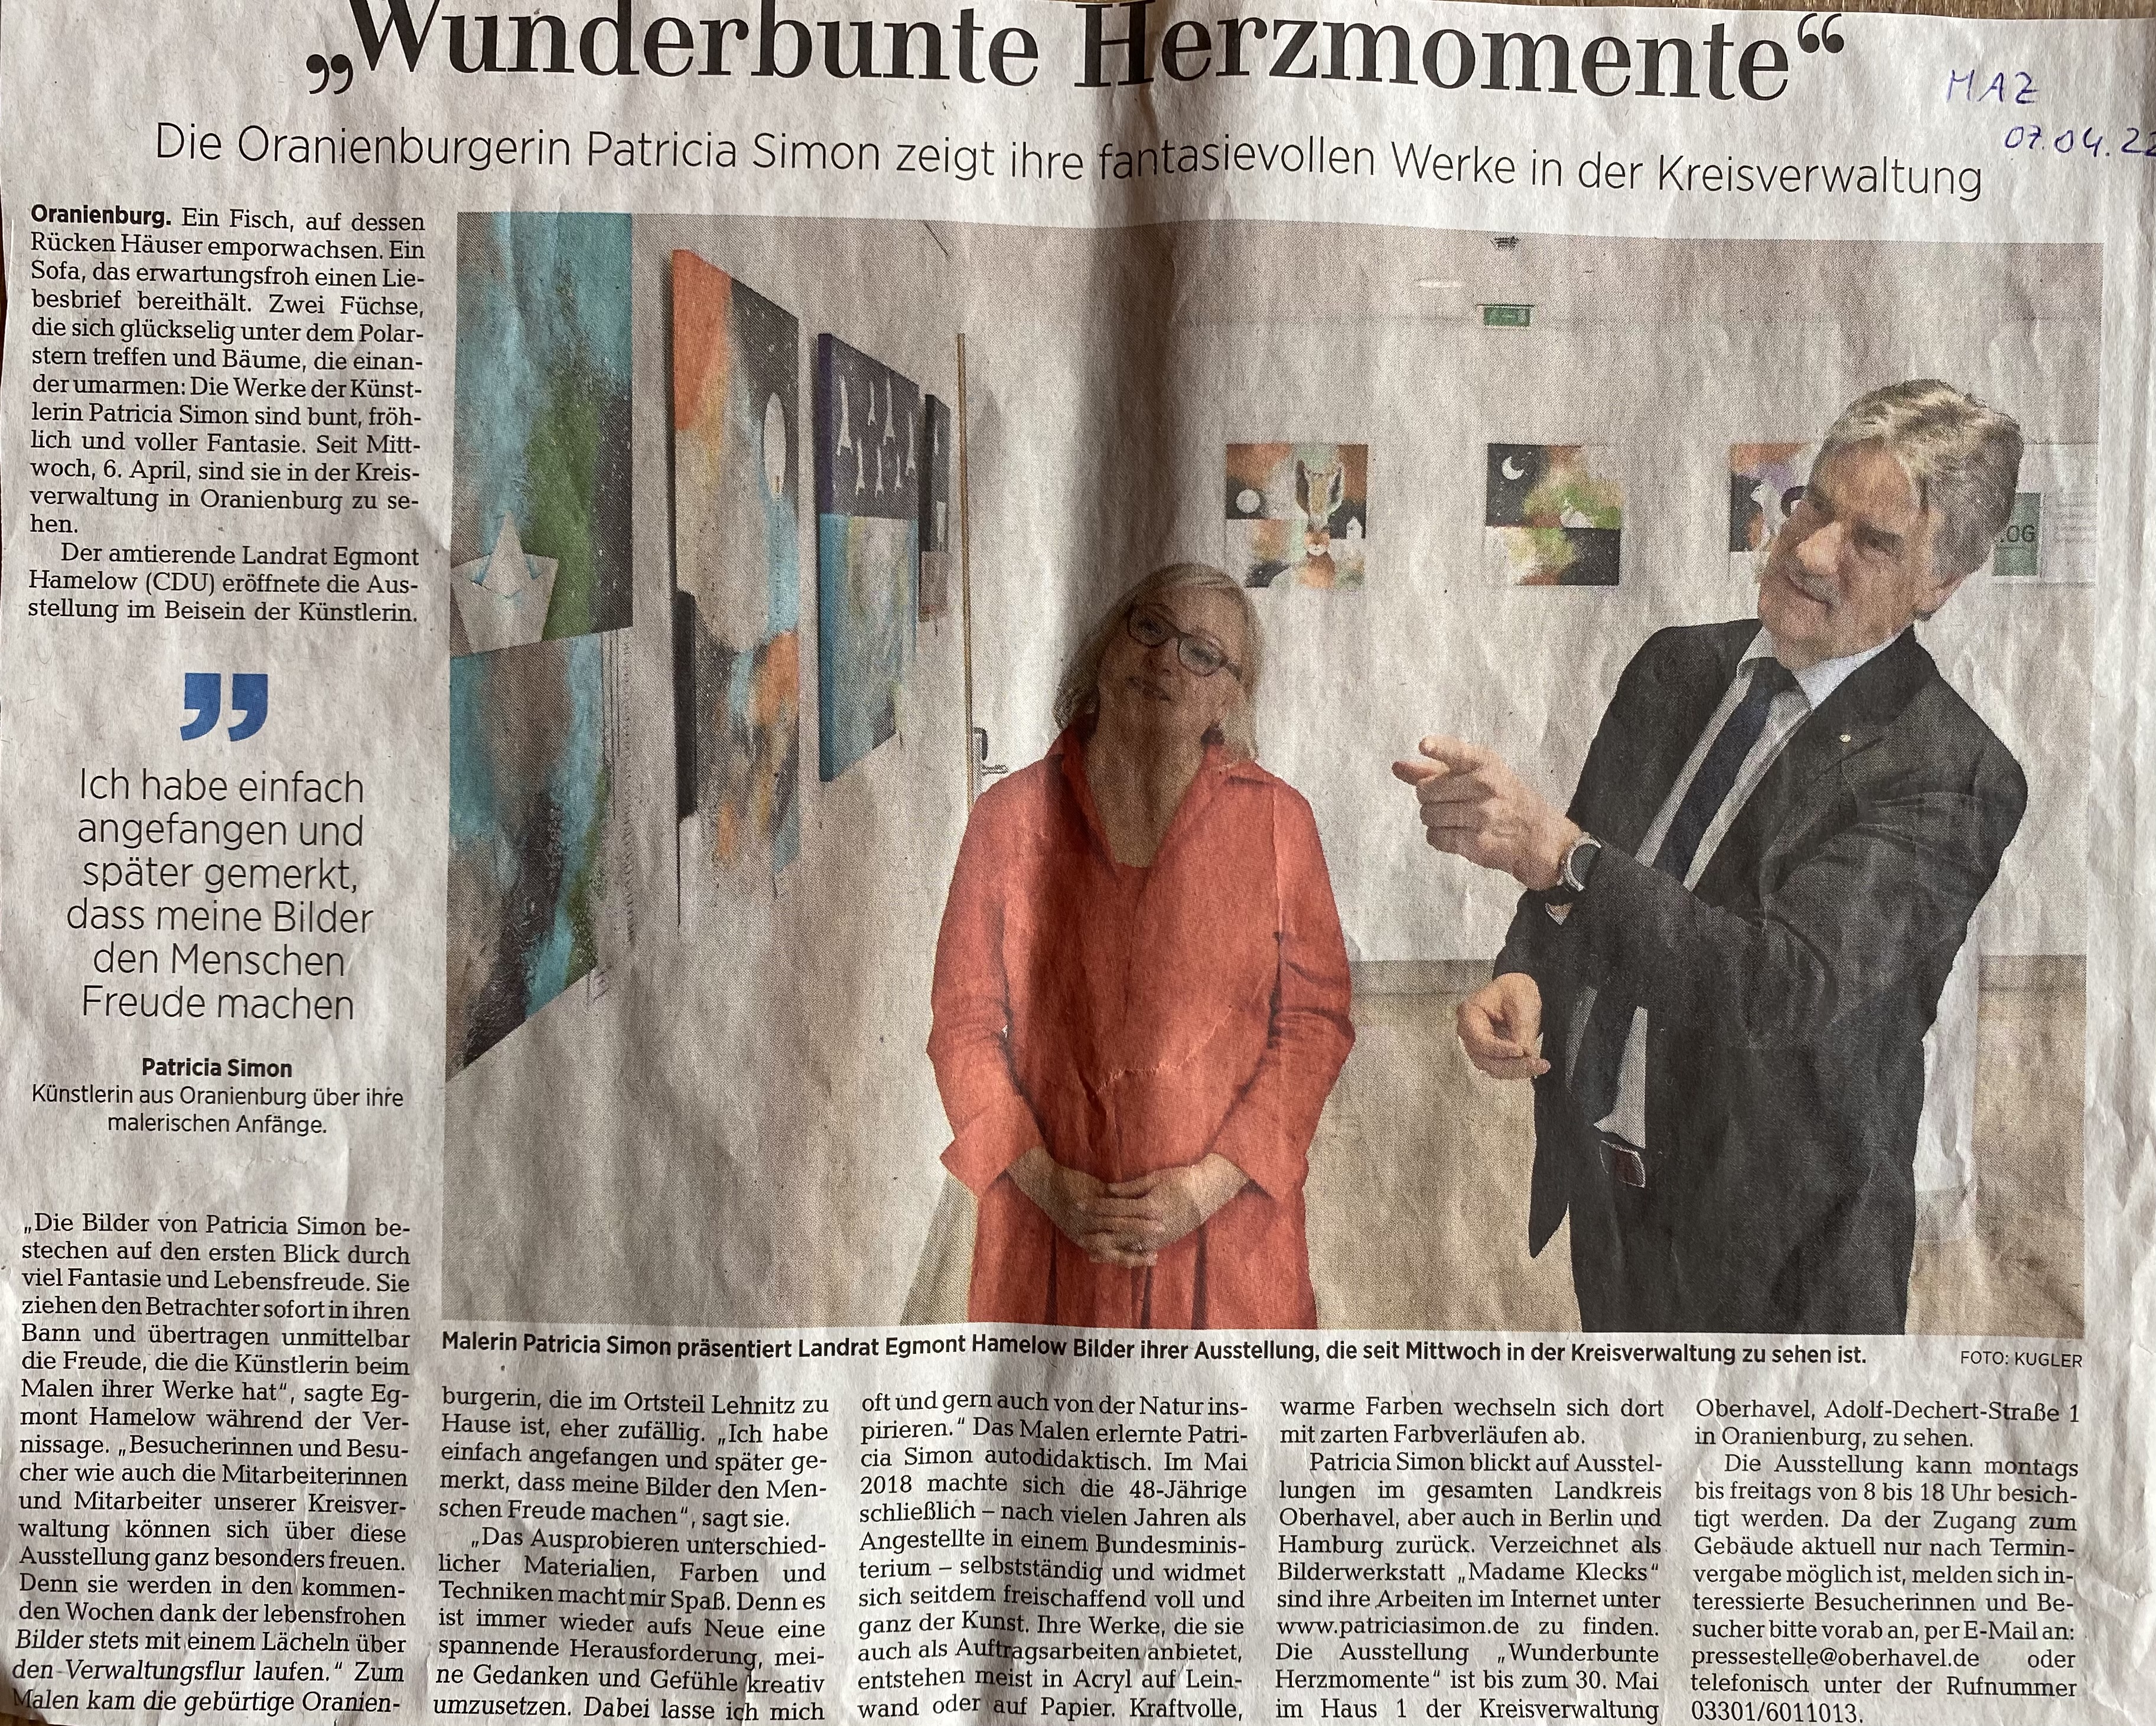 Vernissage "Wunderbunte Herzmomente" 2022
Quelle: Märkische Allgemeine Zeitung